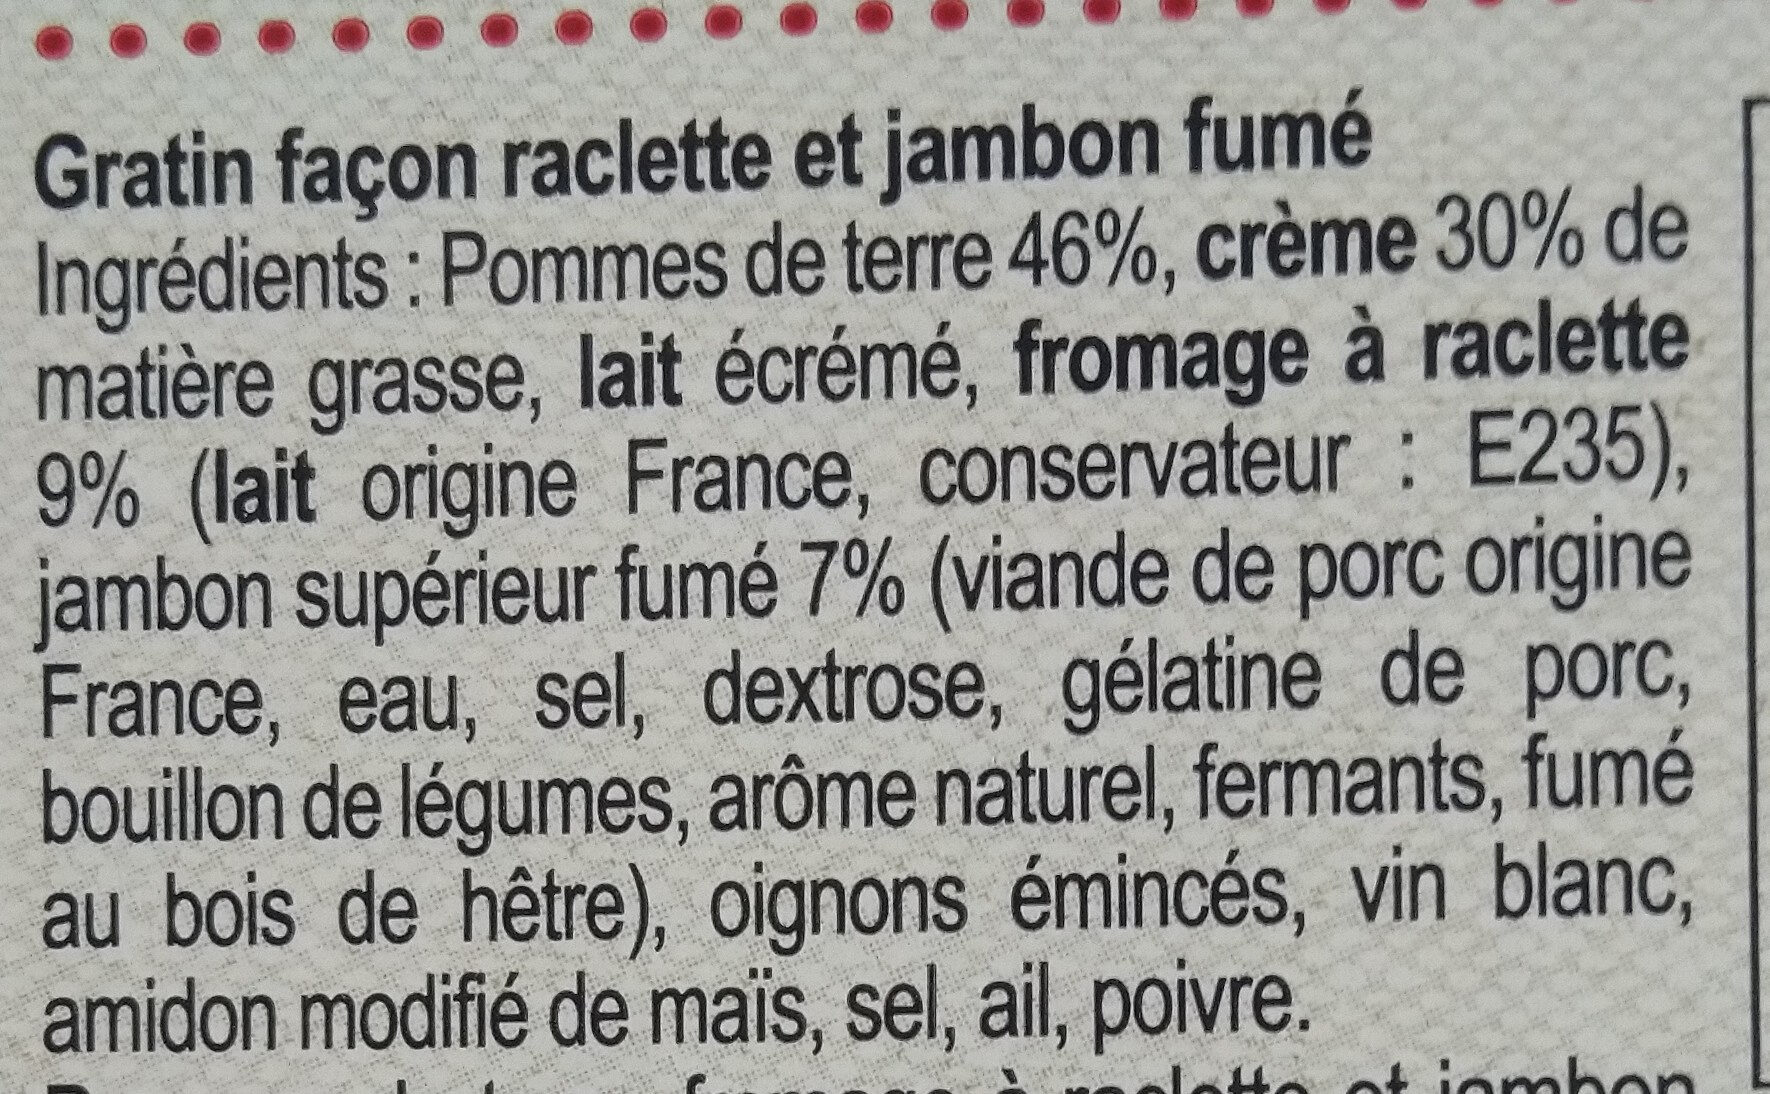 Gratin façon raclette et jambon fumé - Ingredients - fr